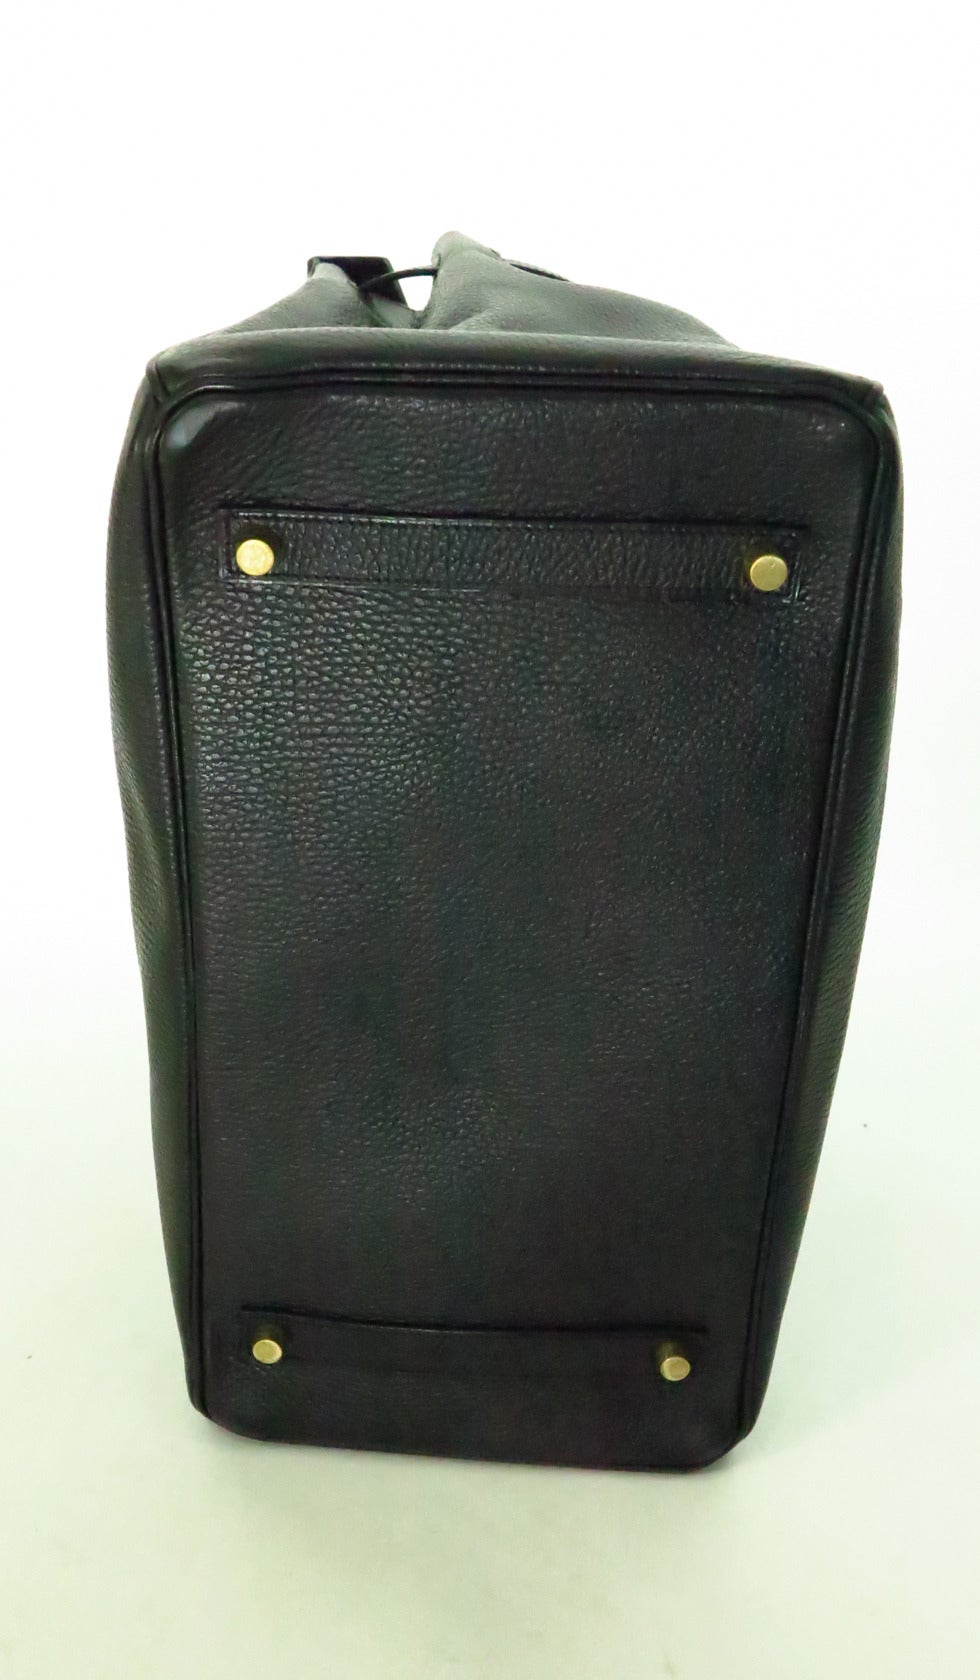 1998 Hermes black togo 35 Cm Birkin handbag with gold hardware 5